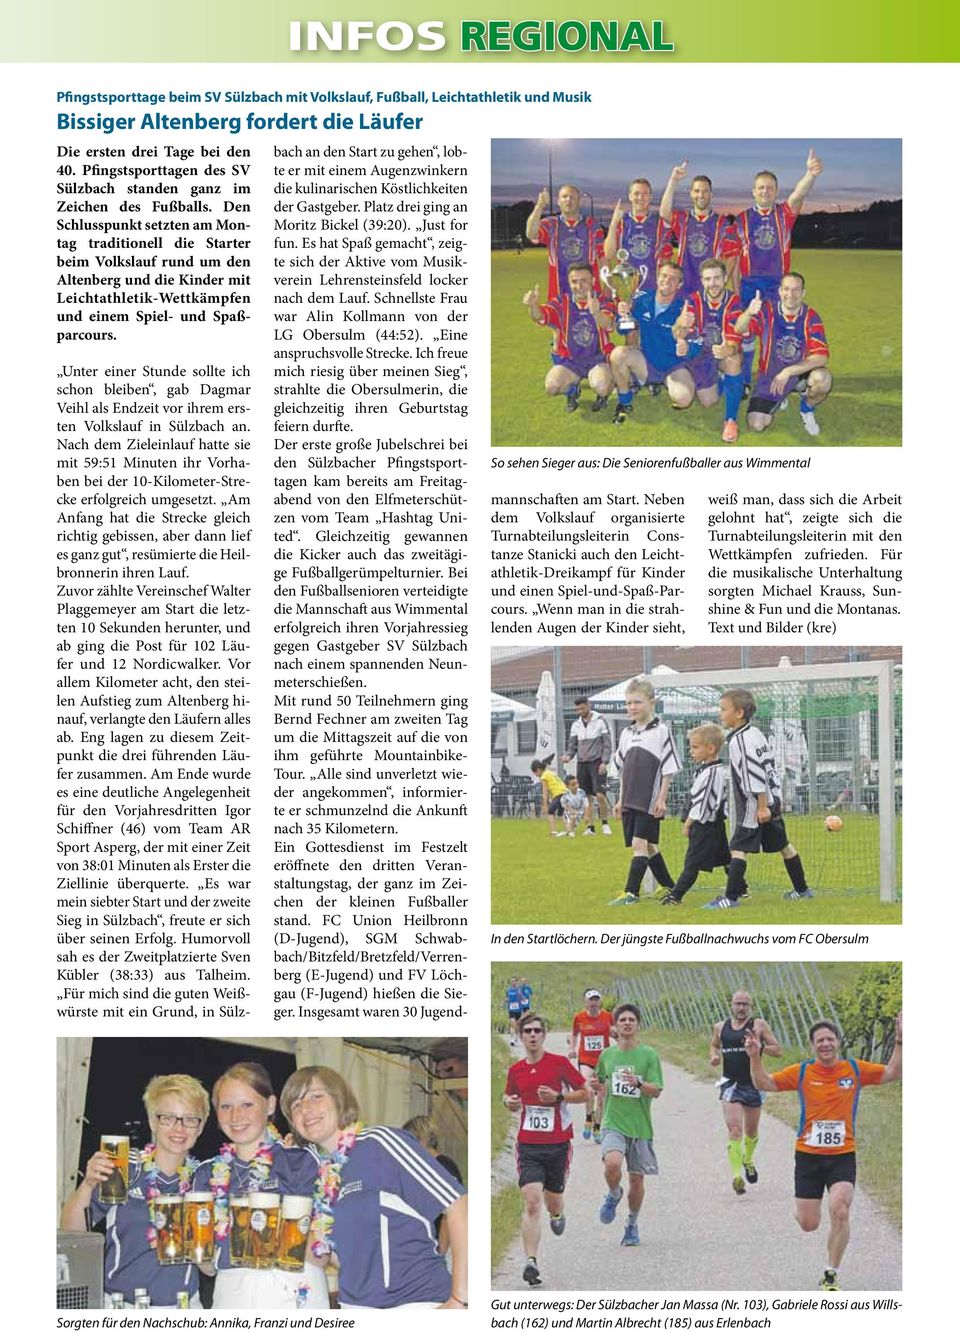 Pfingstsporttagen des SV Sülzbach standen ganz im Zeichen des Fußballs.